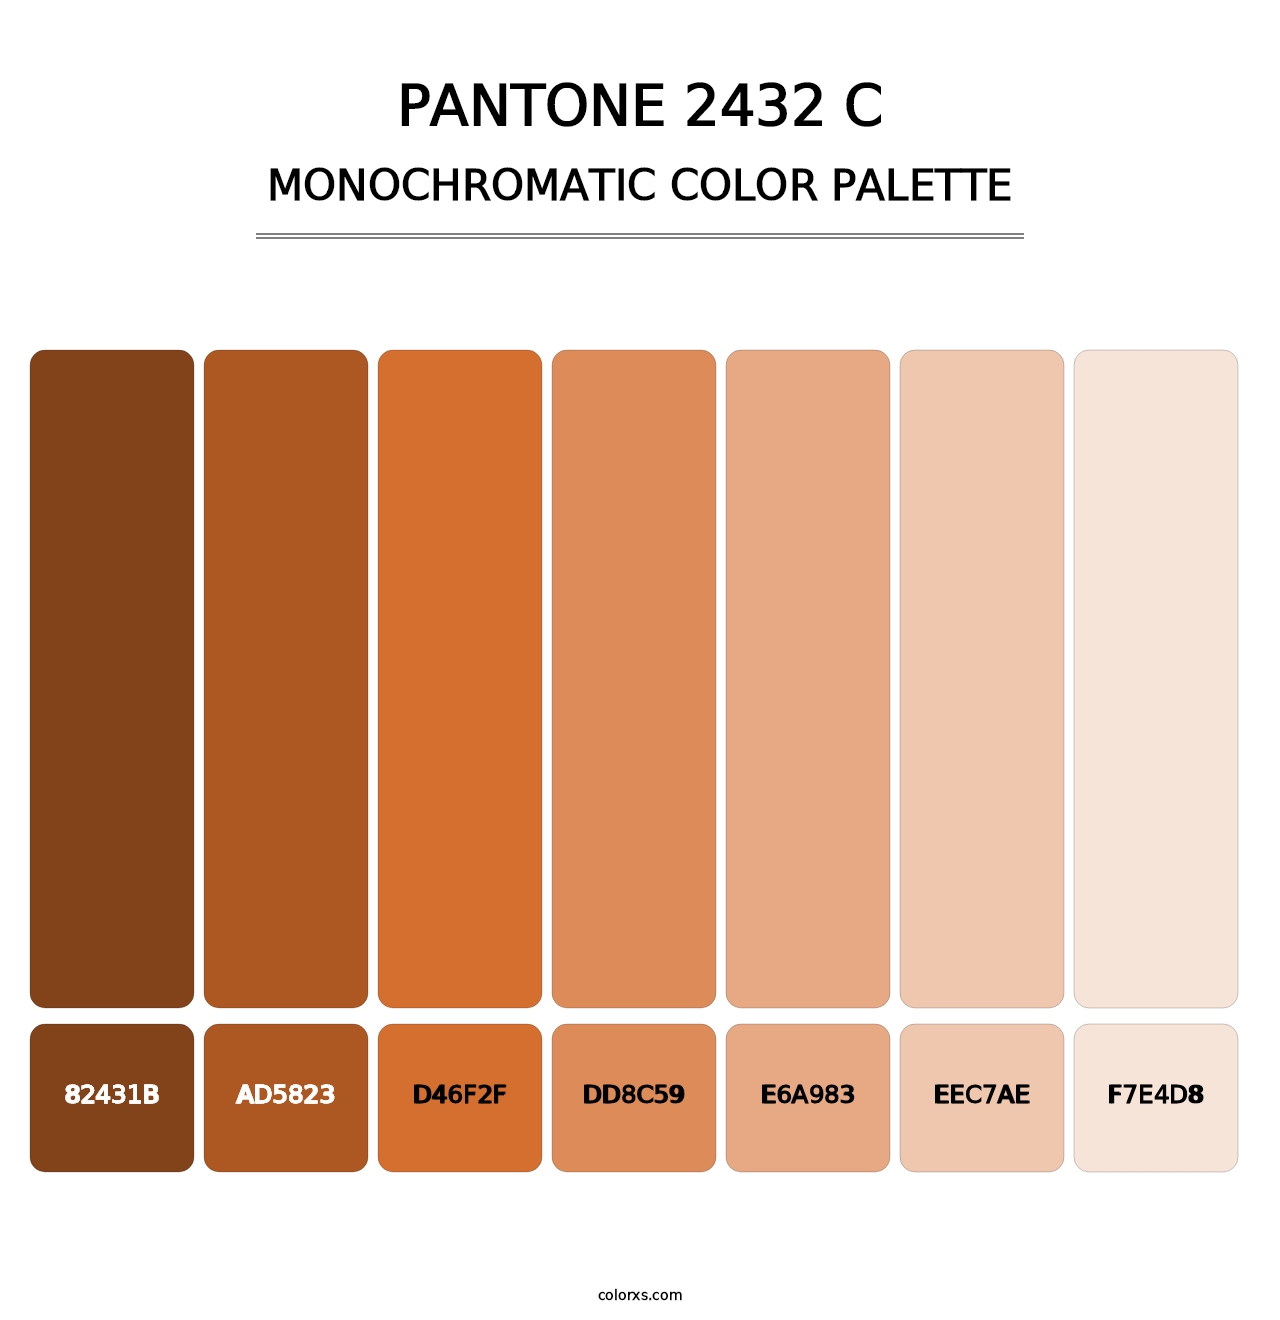 PANTONE 2432 C - Monochromatic Color Palette